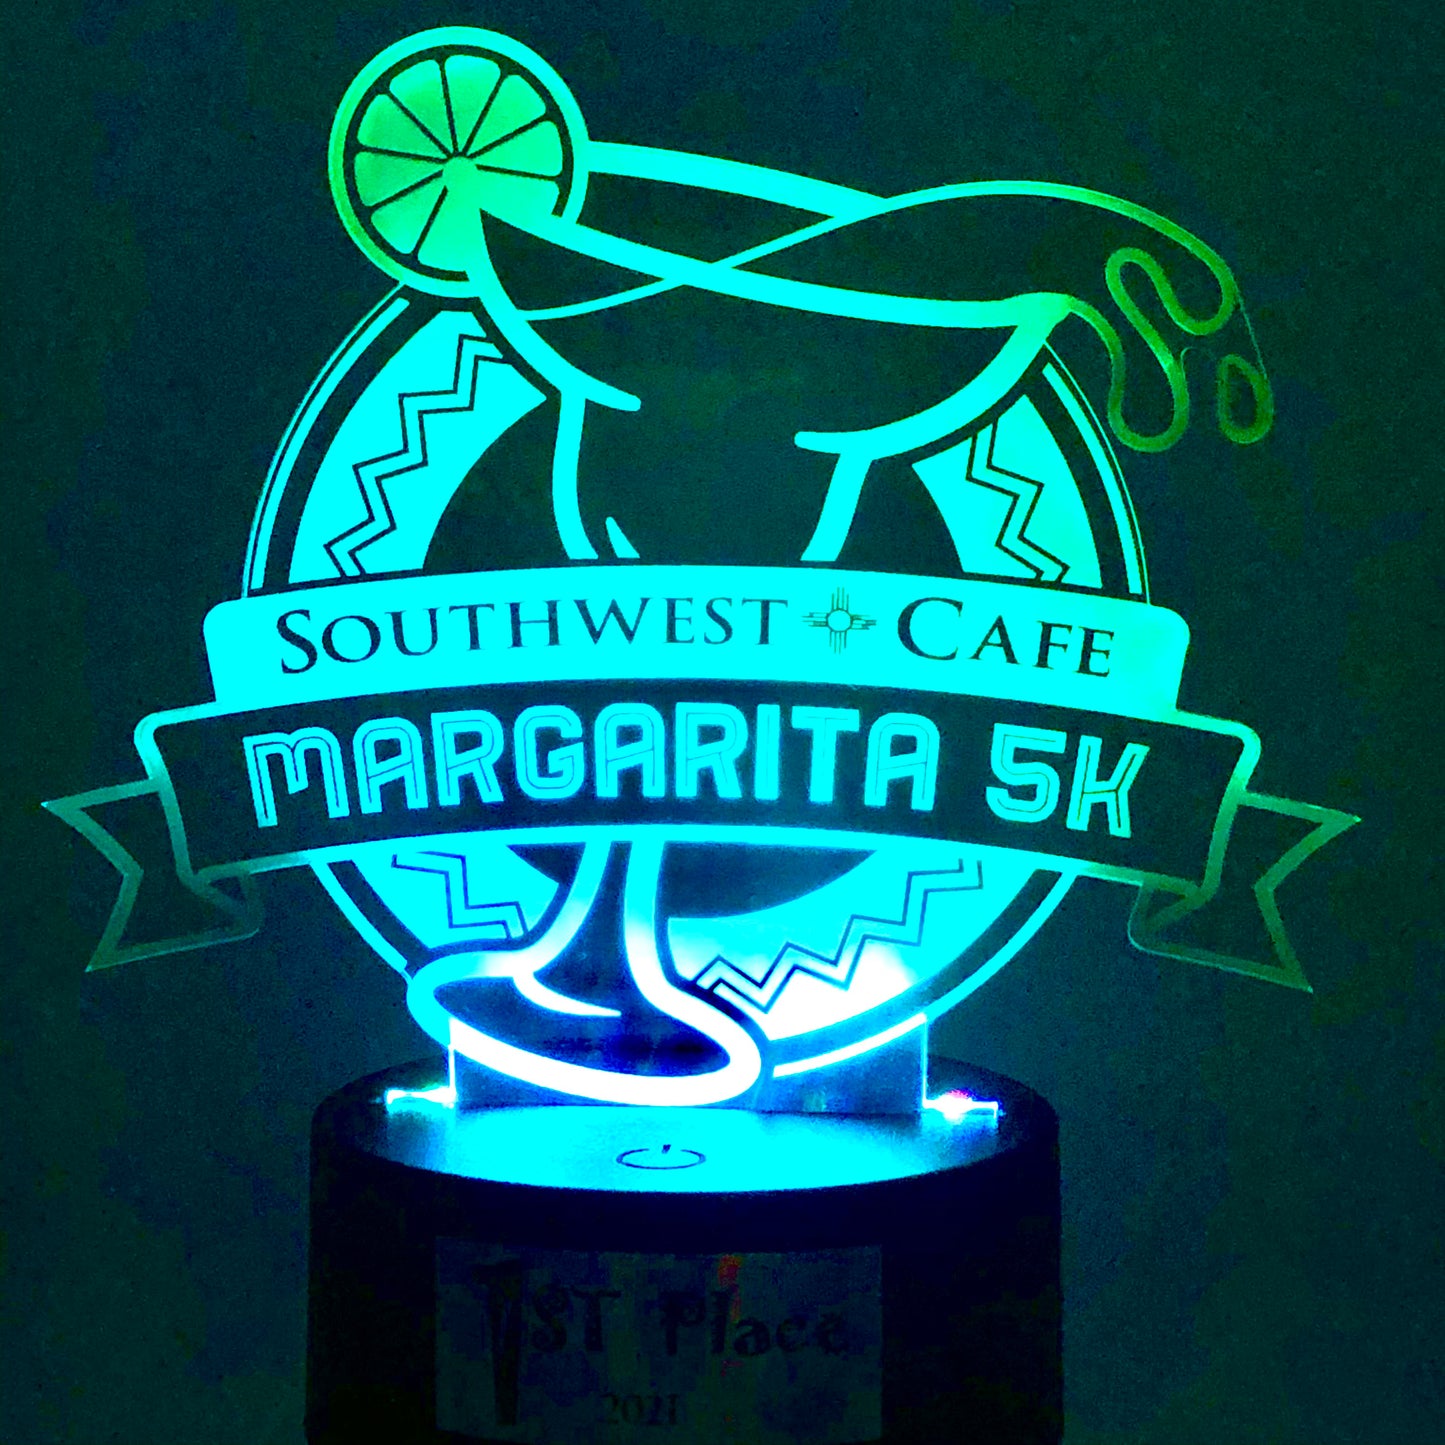 Southwest Cafe Margarita 5k  - Acrylic light up Awards